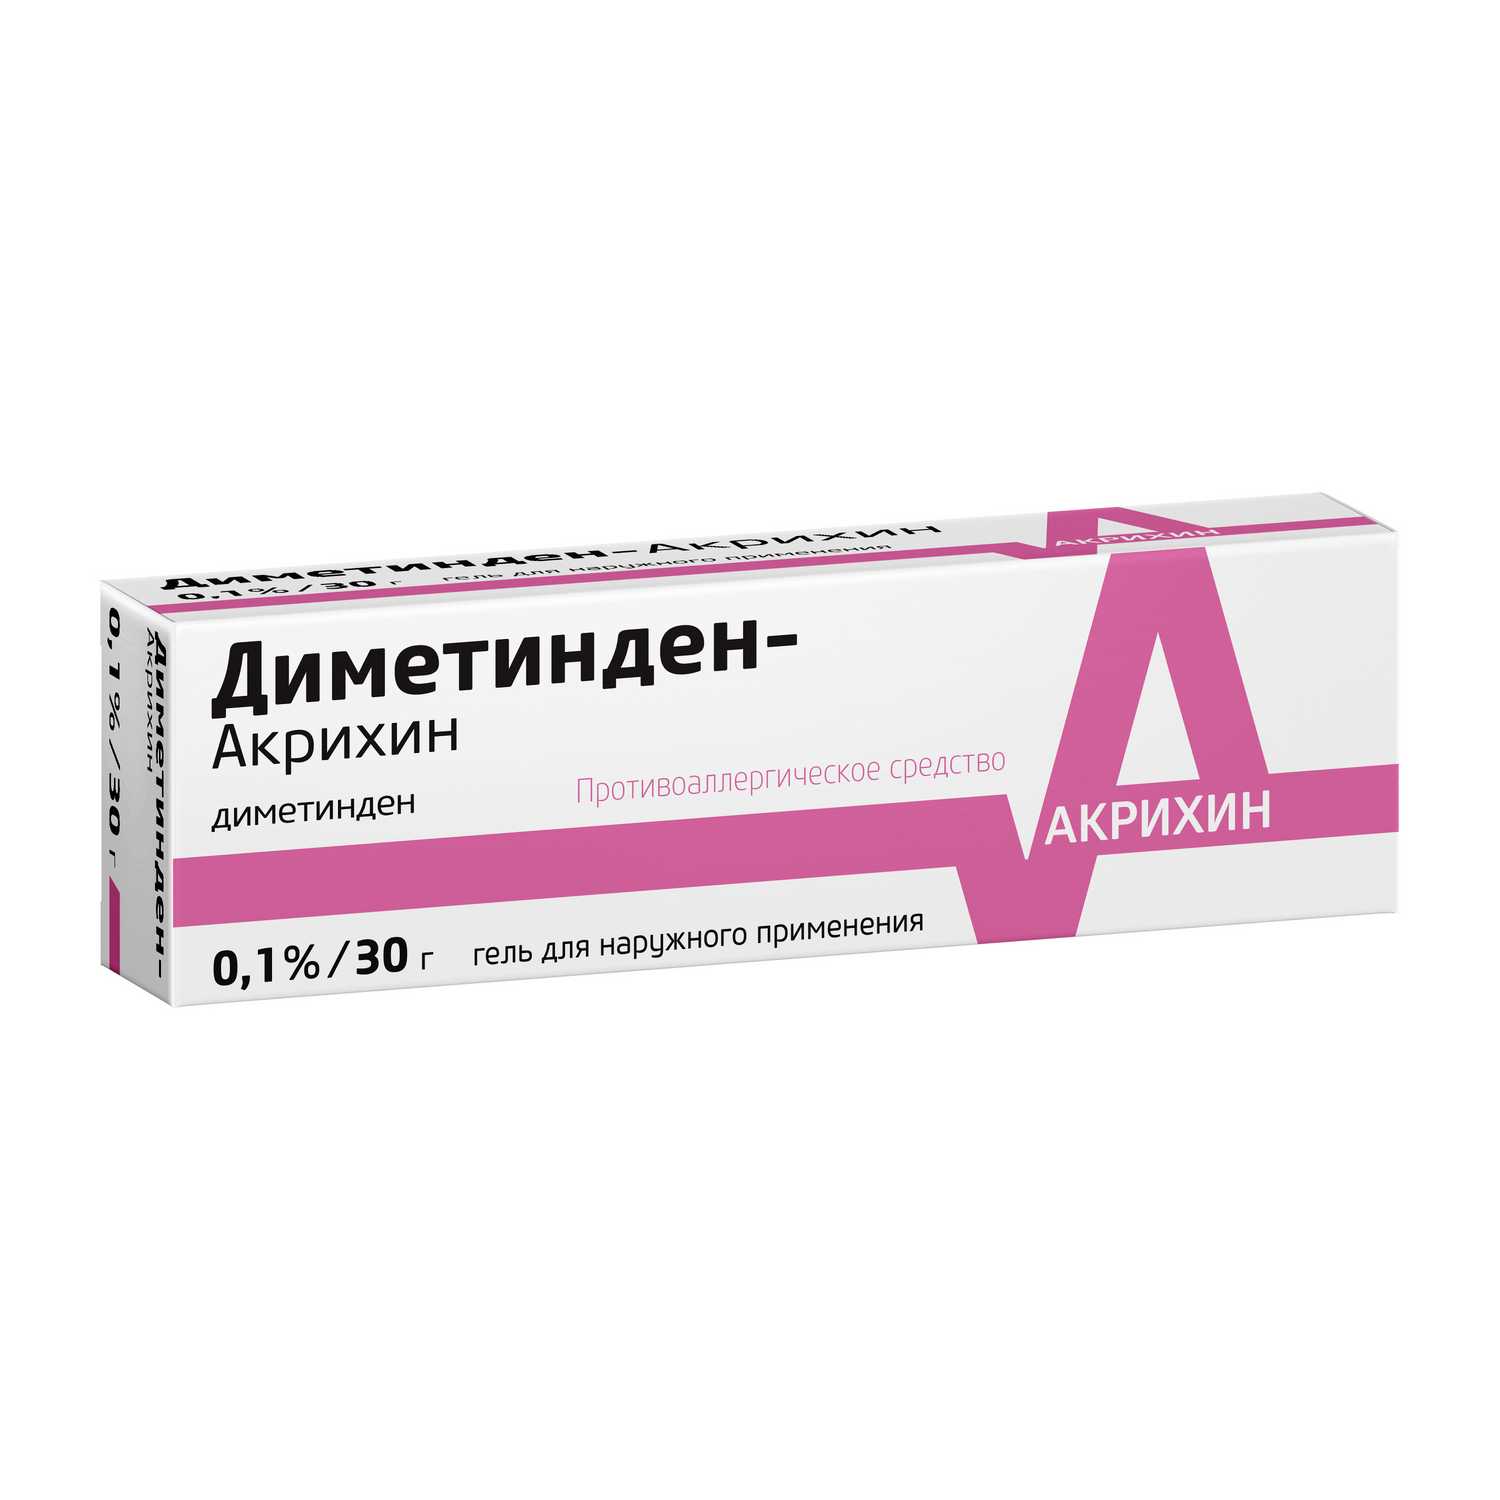 Купить Диметинден-Акрихин гель 0.1% 30 г (диметинден) по выгодной цене .